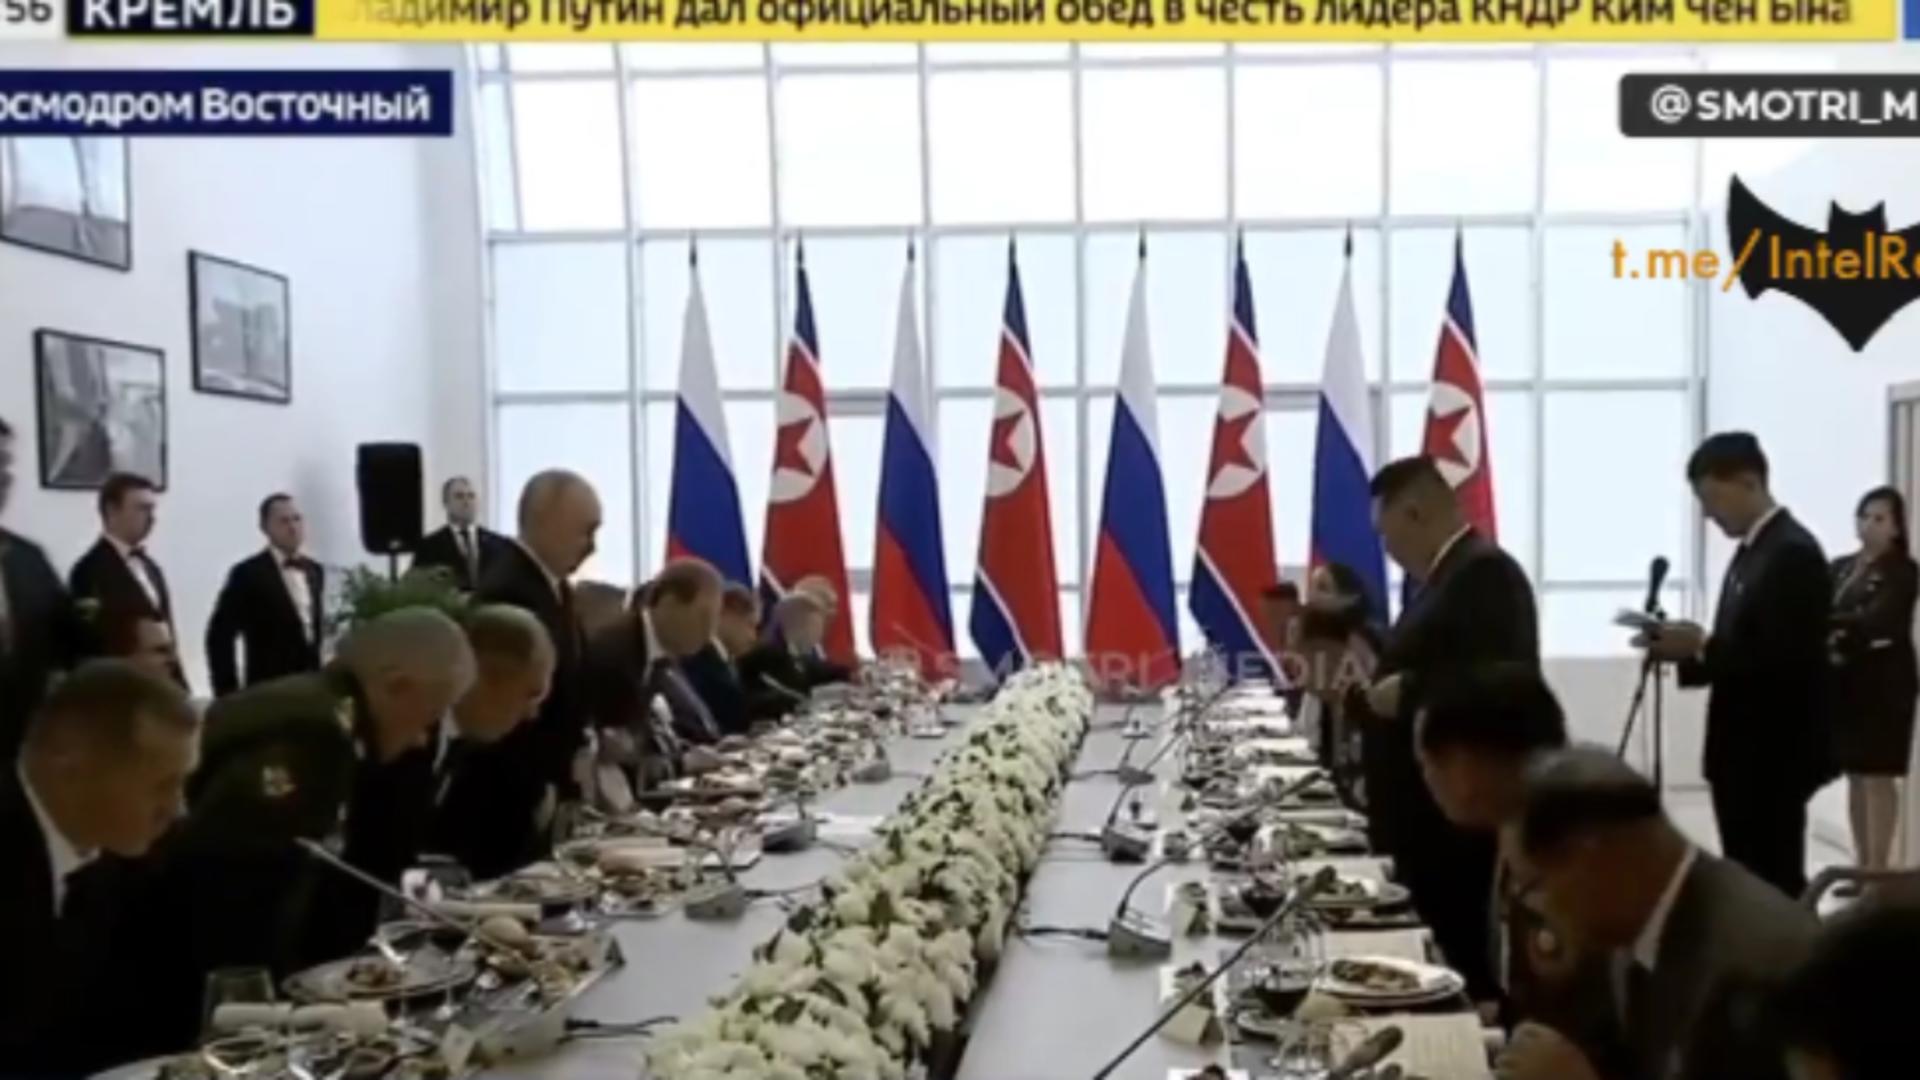 Desfăț culinar la dineul oferit de Vladimir Putin, la Cosmodromul Vostocini - Cu ce bunătăți l-a tratat pe Kim Jong Un - VIDEO